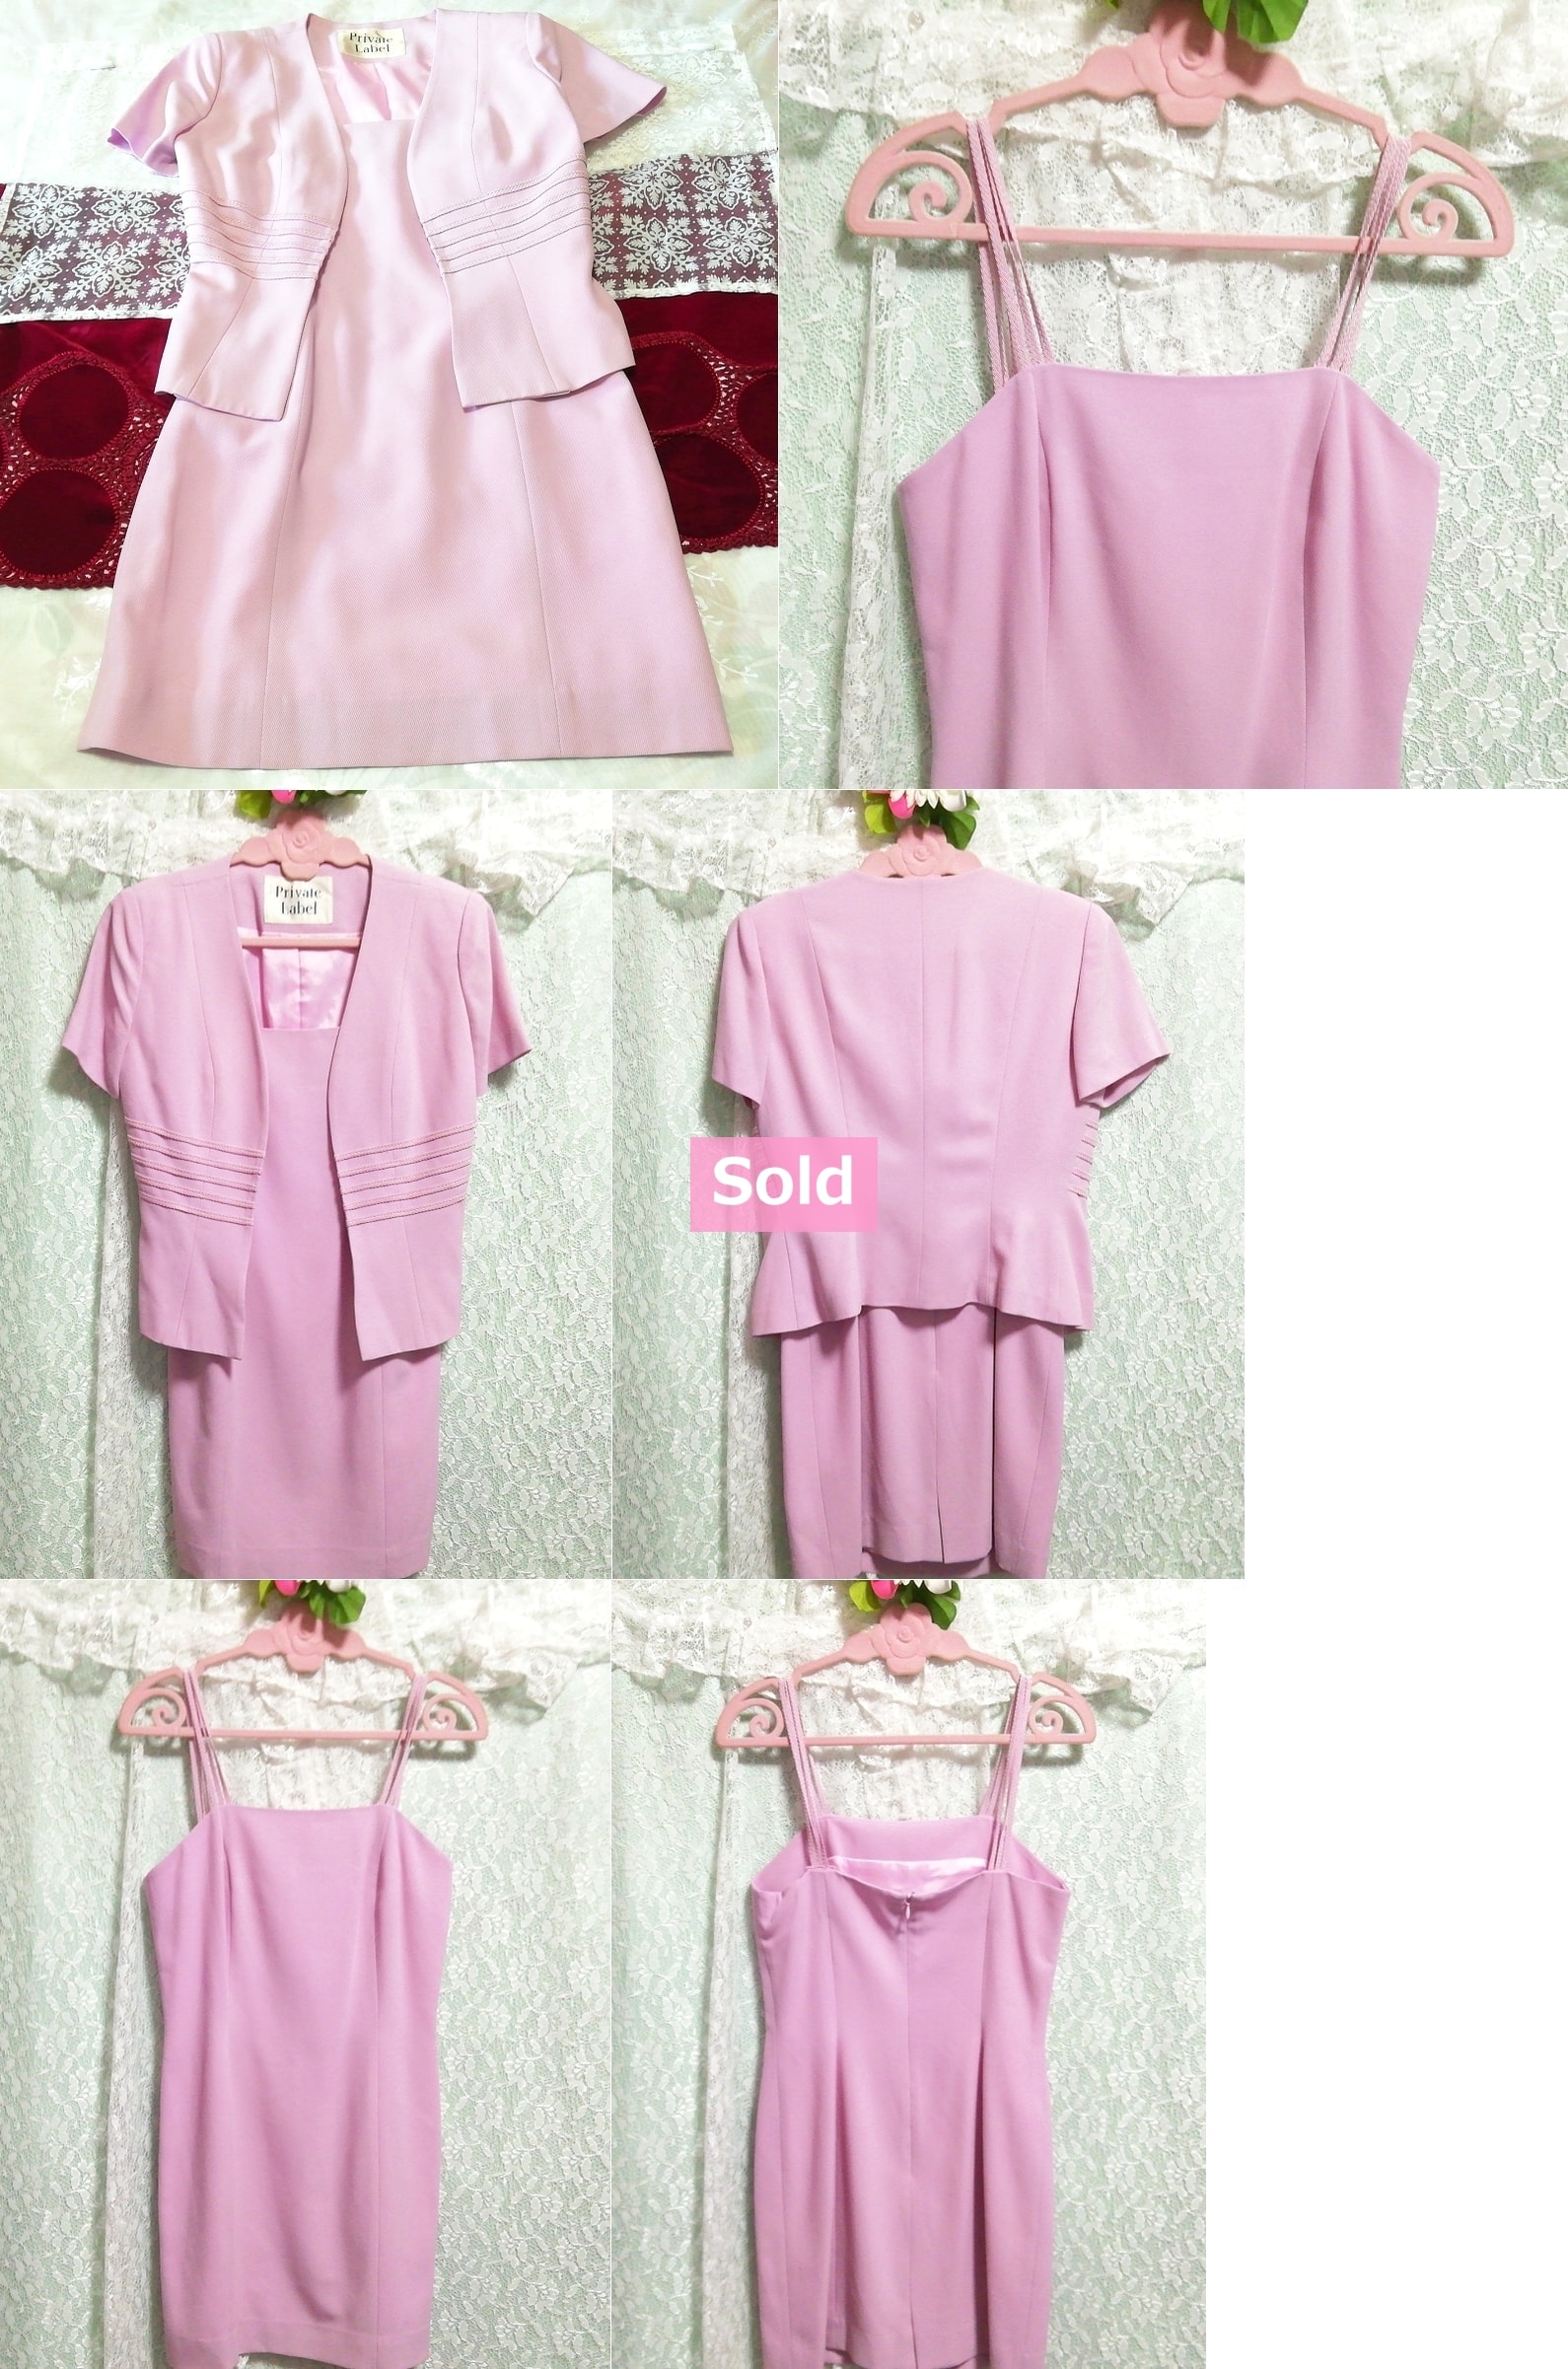 2 Sätze rosa Anzüge, Camisole-Kleid und Strickjacke, hergestellt in Japan, Frauenmode, Anzug, Knielanger Rock